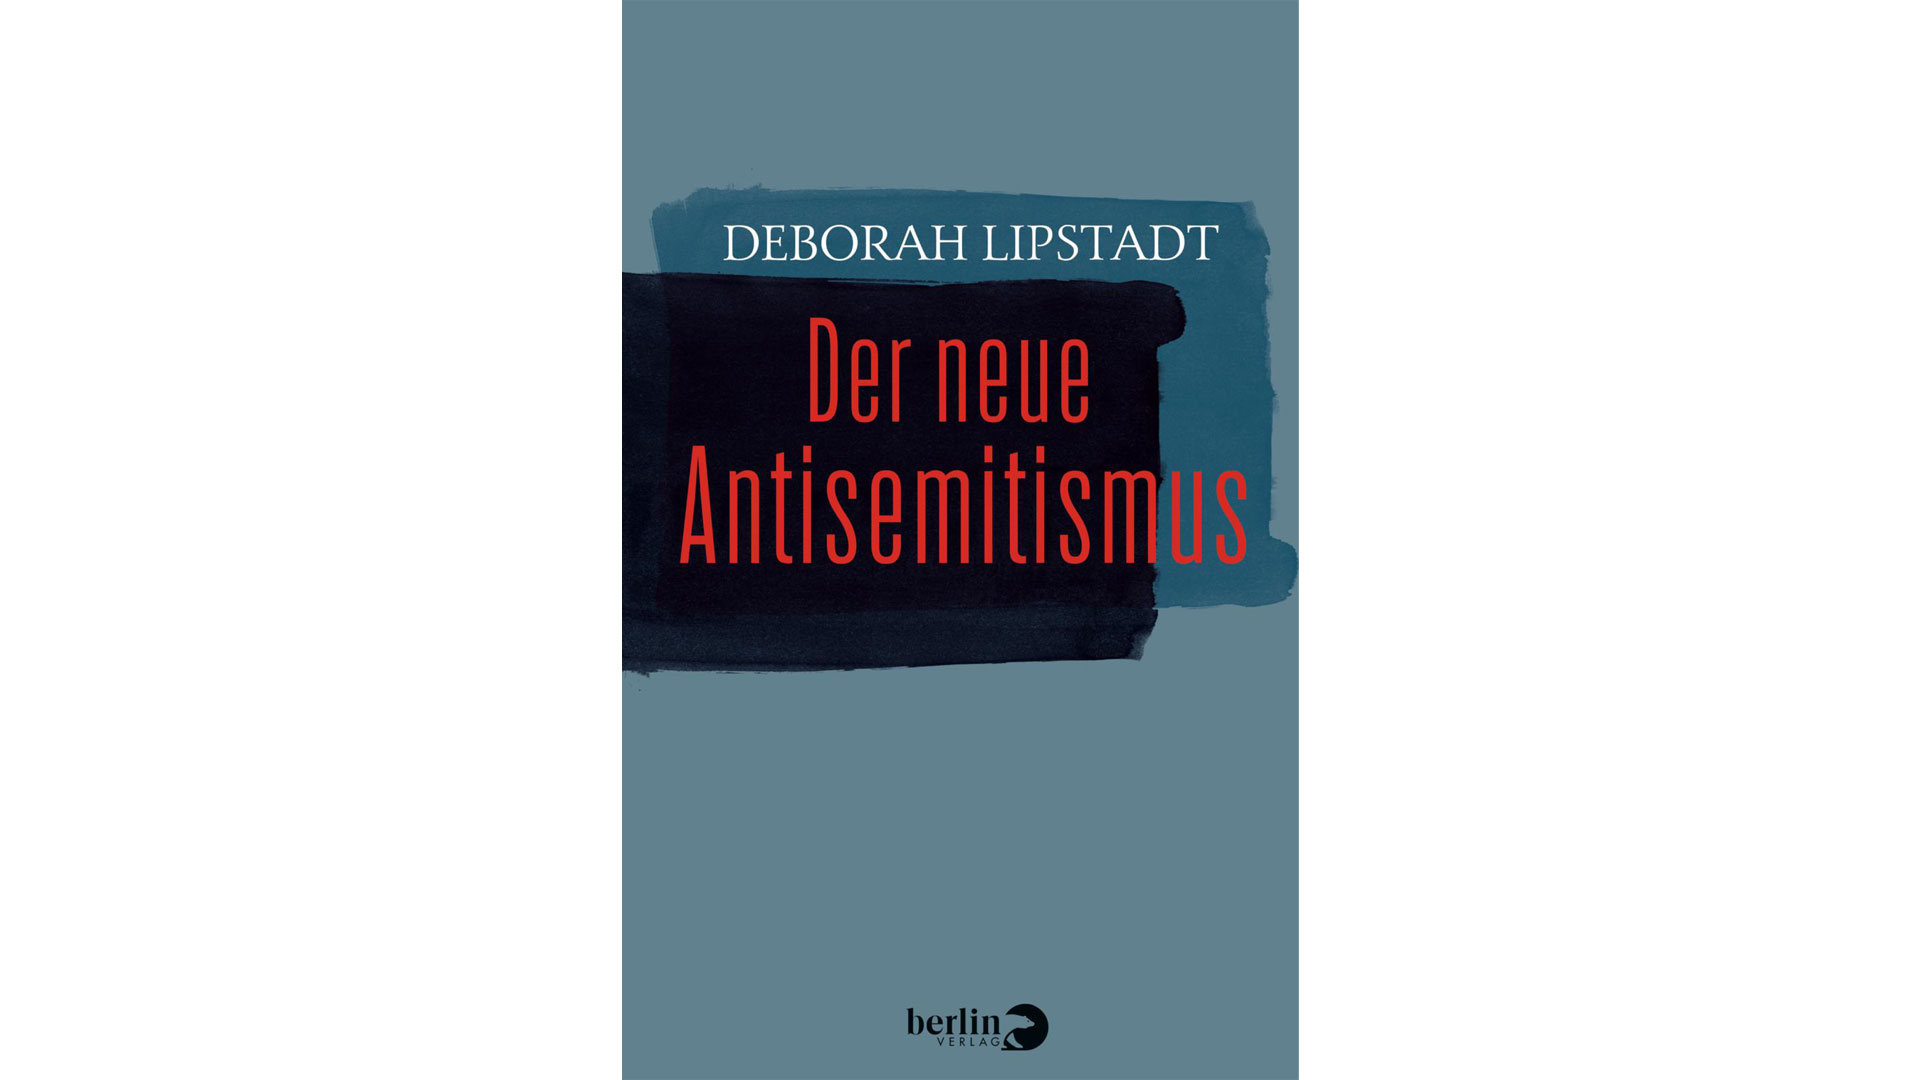 Deborah Lipstadt: „Der neue Antisemitismus“ Berlin-Verlag 24 Euro, 304 Seiten ISBN 978-3827013408